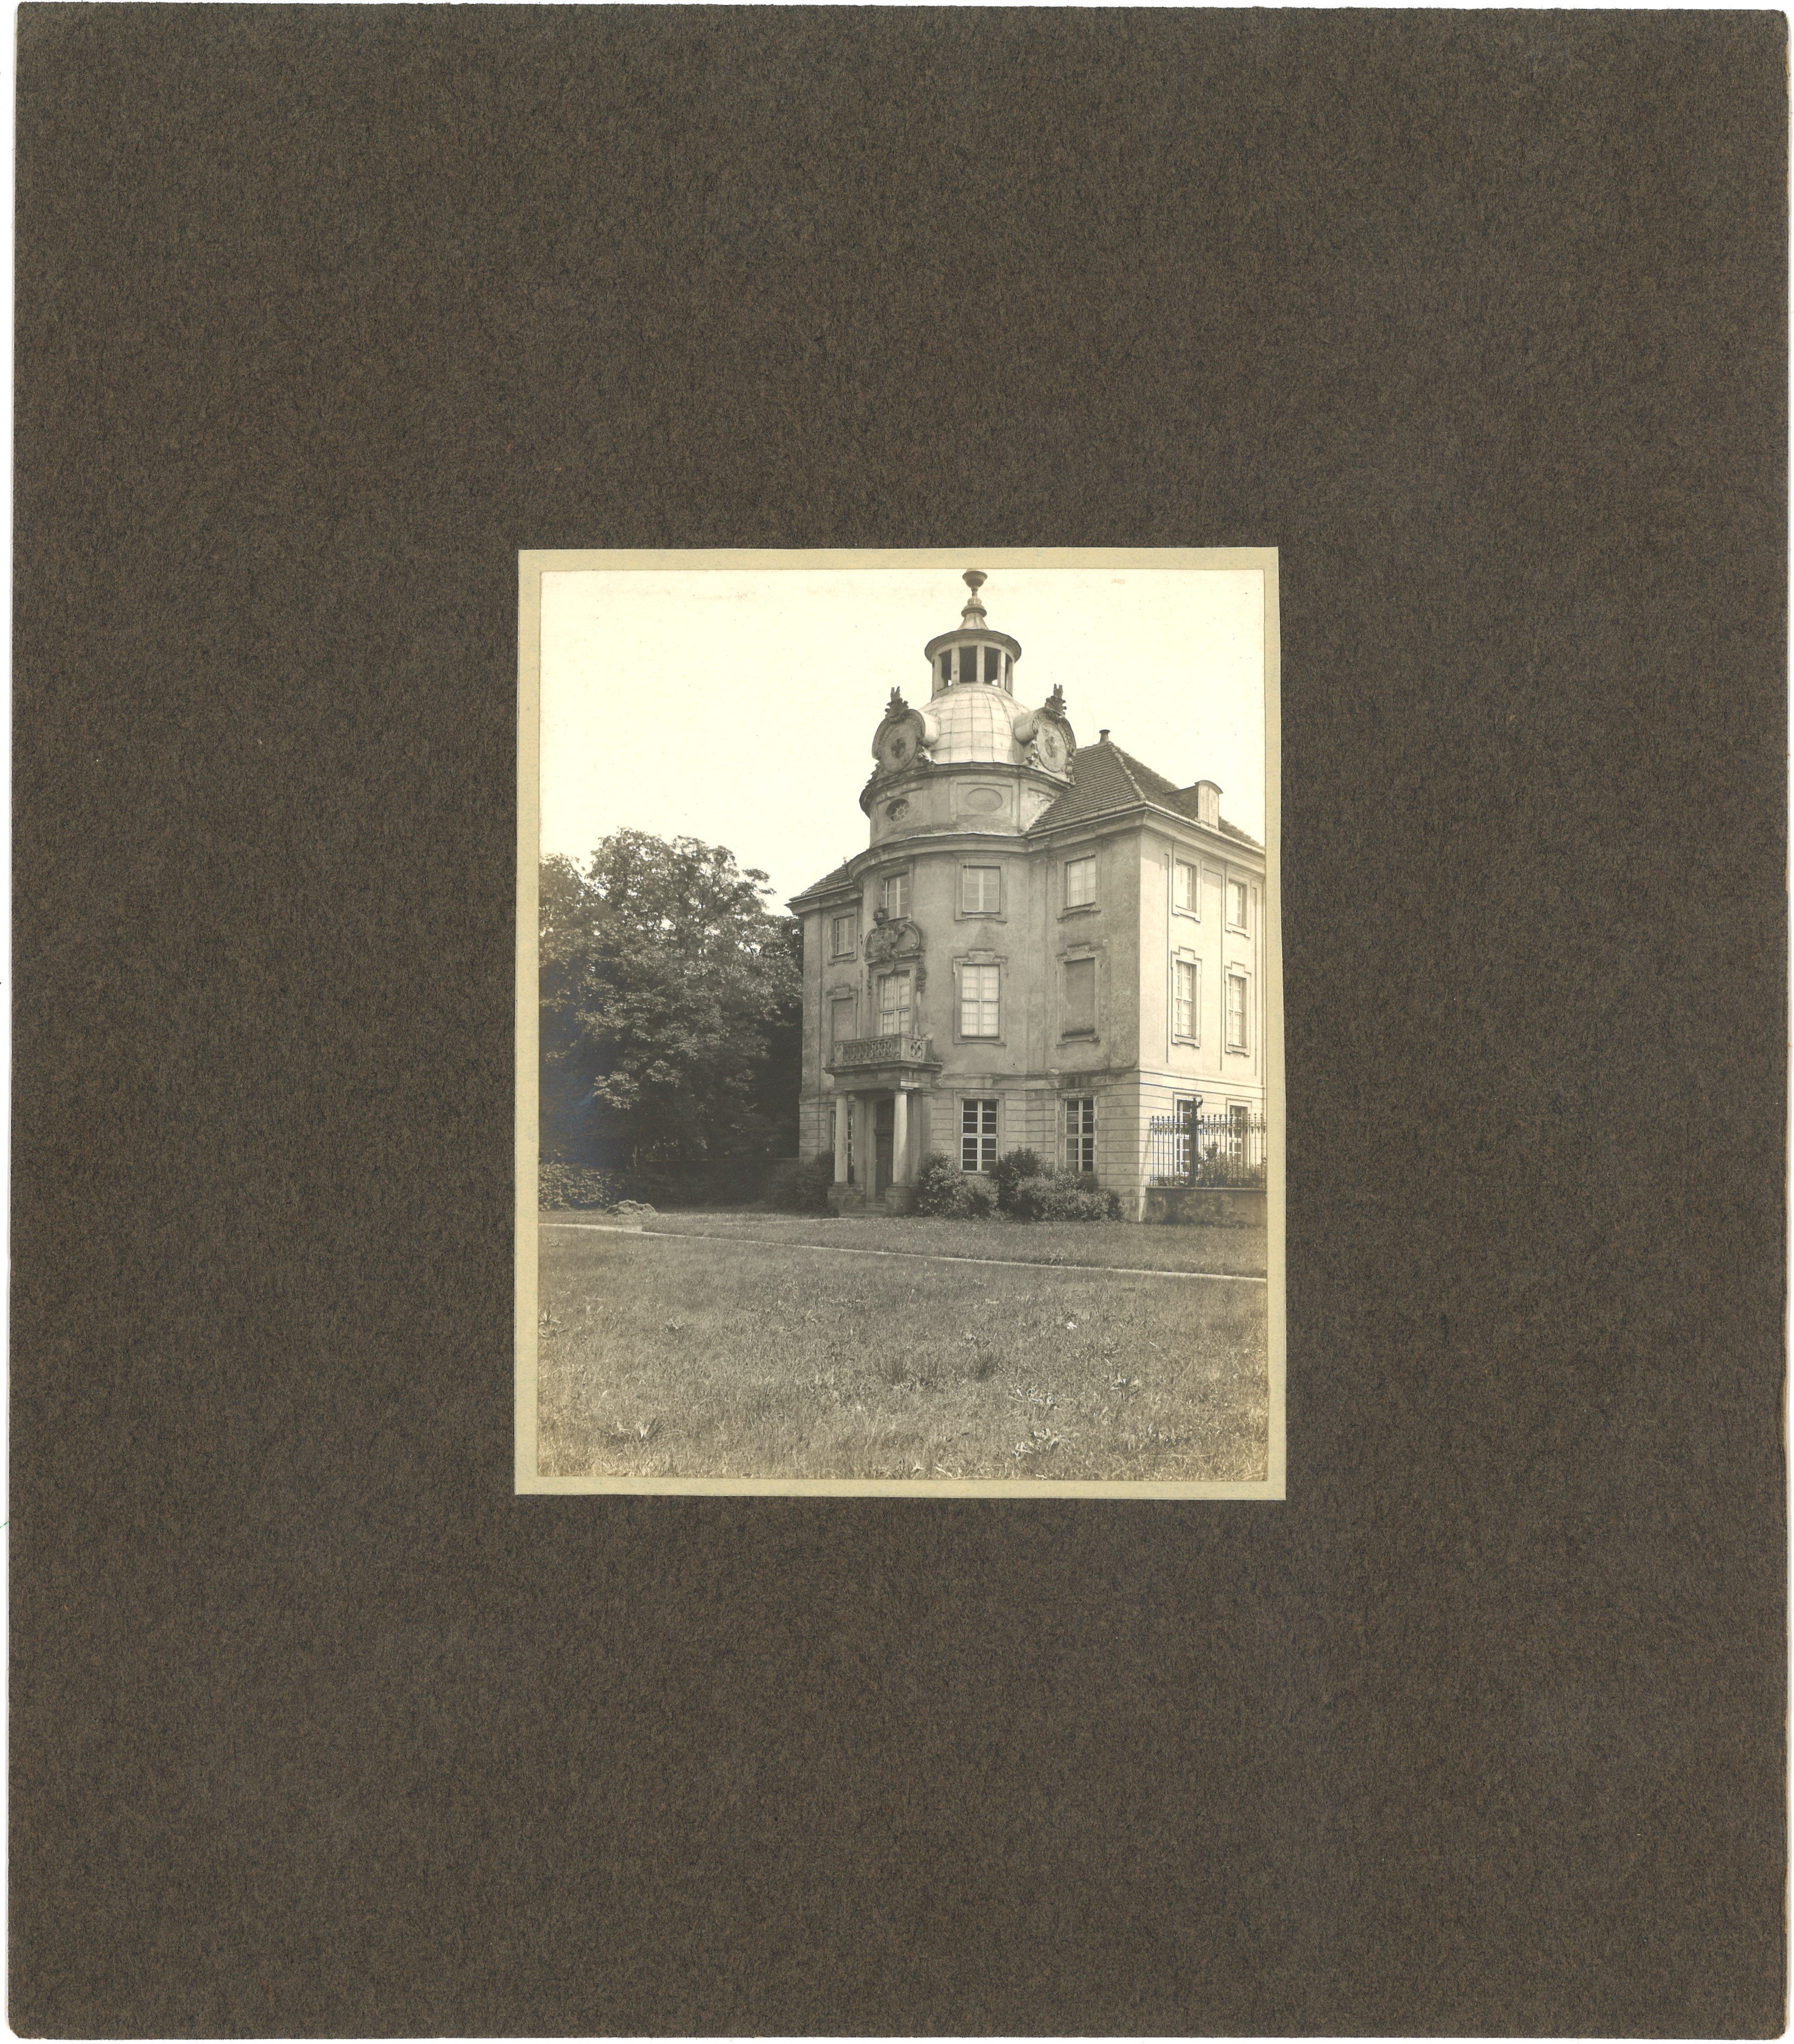 Schwedt/Oder: Schloss, nördlicher Seitenflügel (Landesgeschichtliche Vereinigung für die Mark Brandenburg e.V., Archiv CC BY)